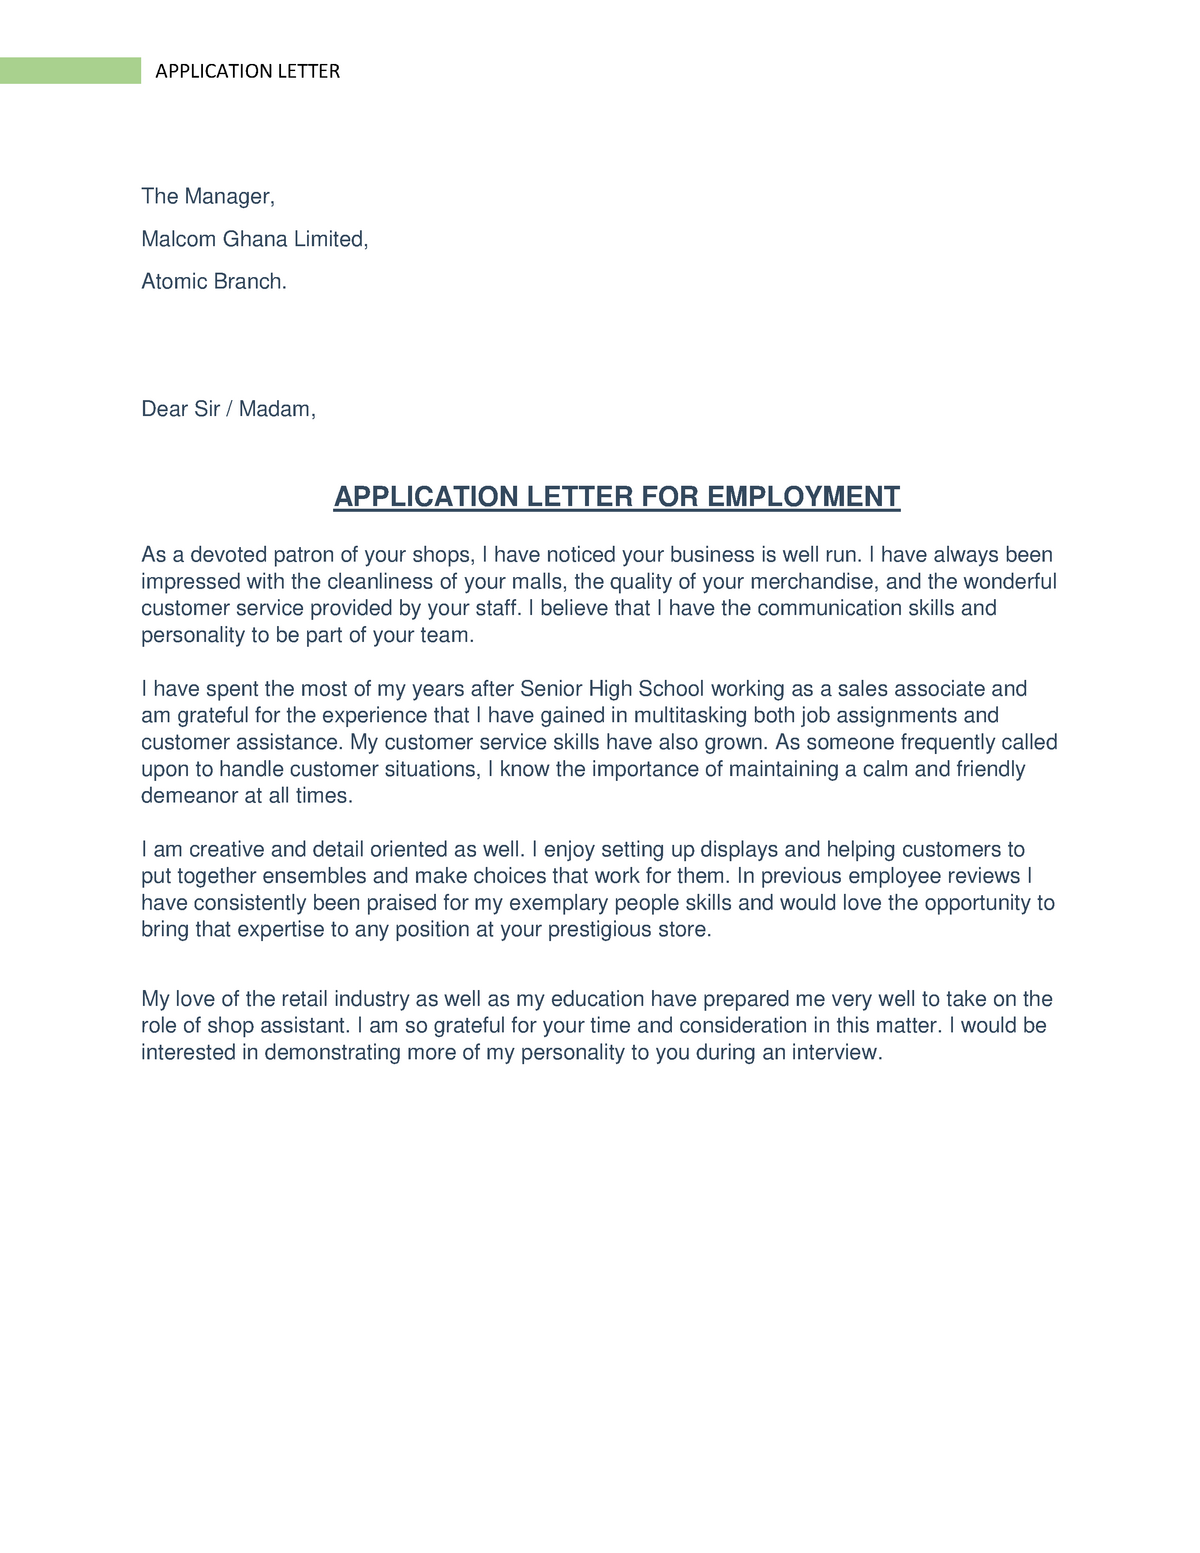 simple job application letter in ghana